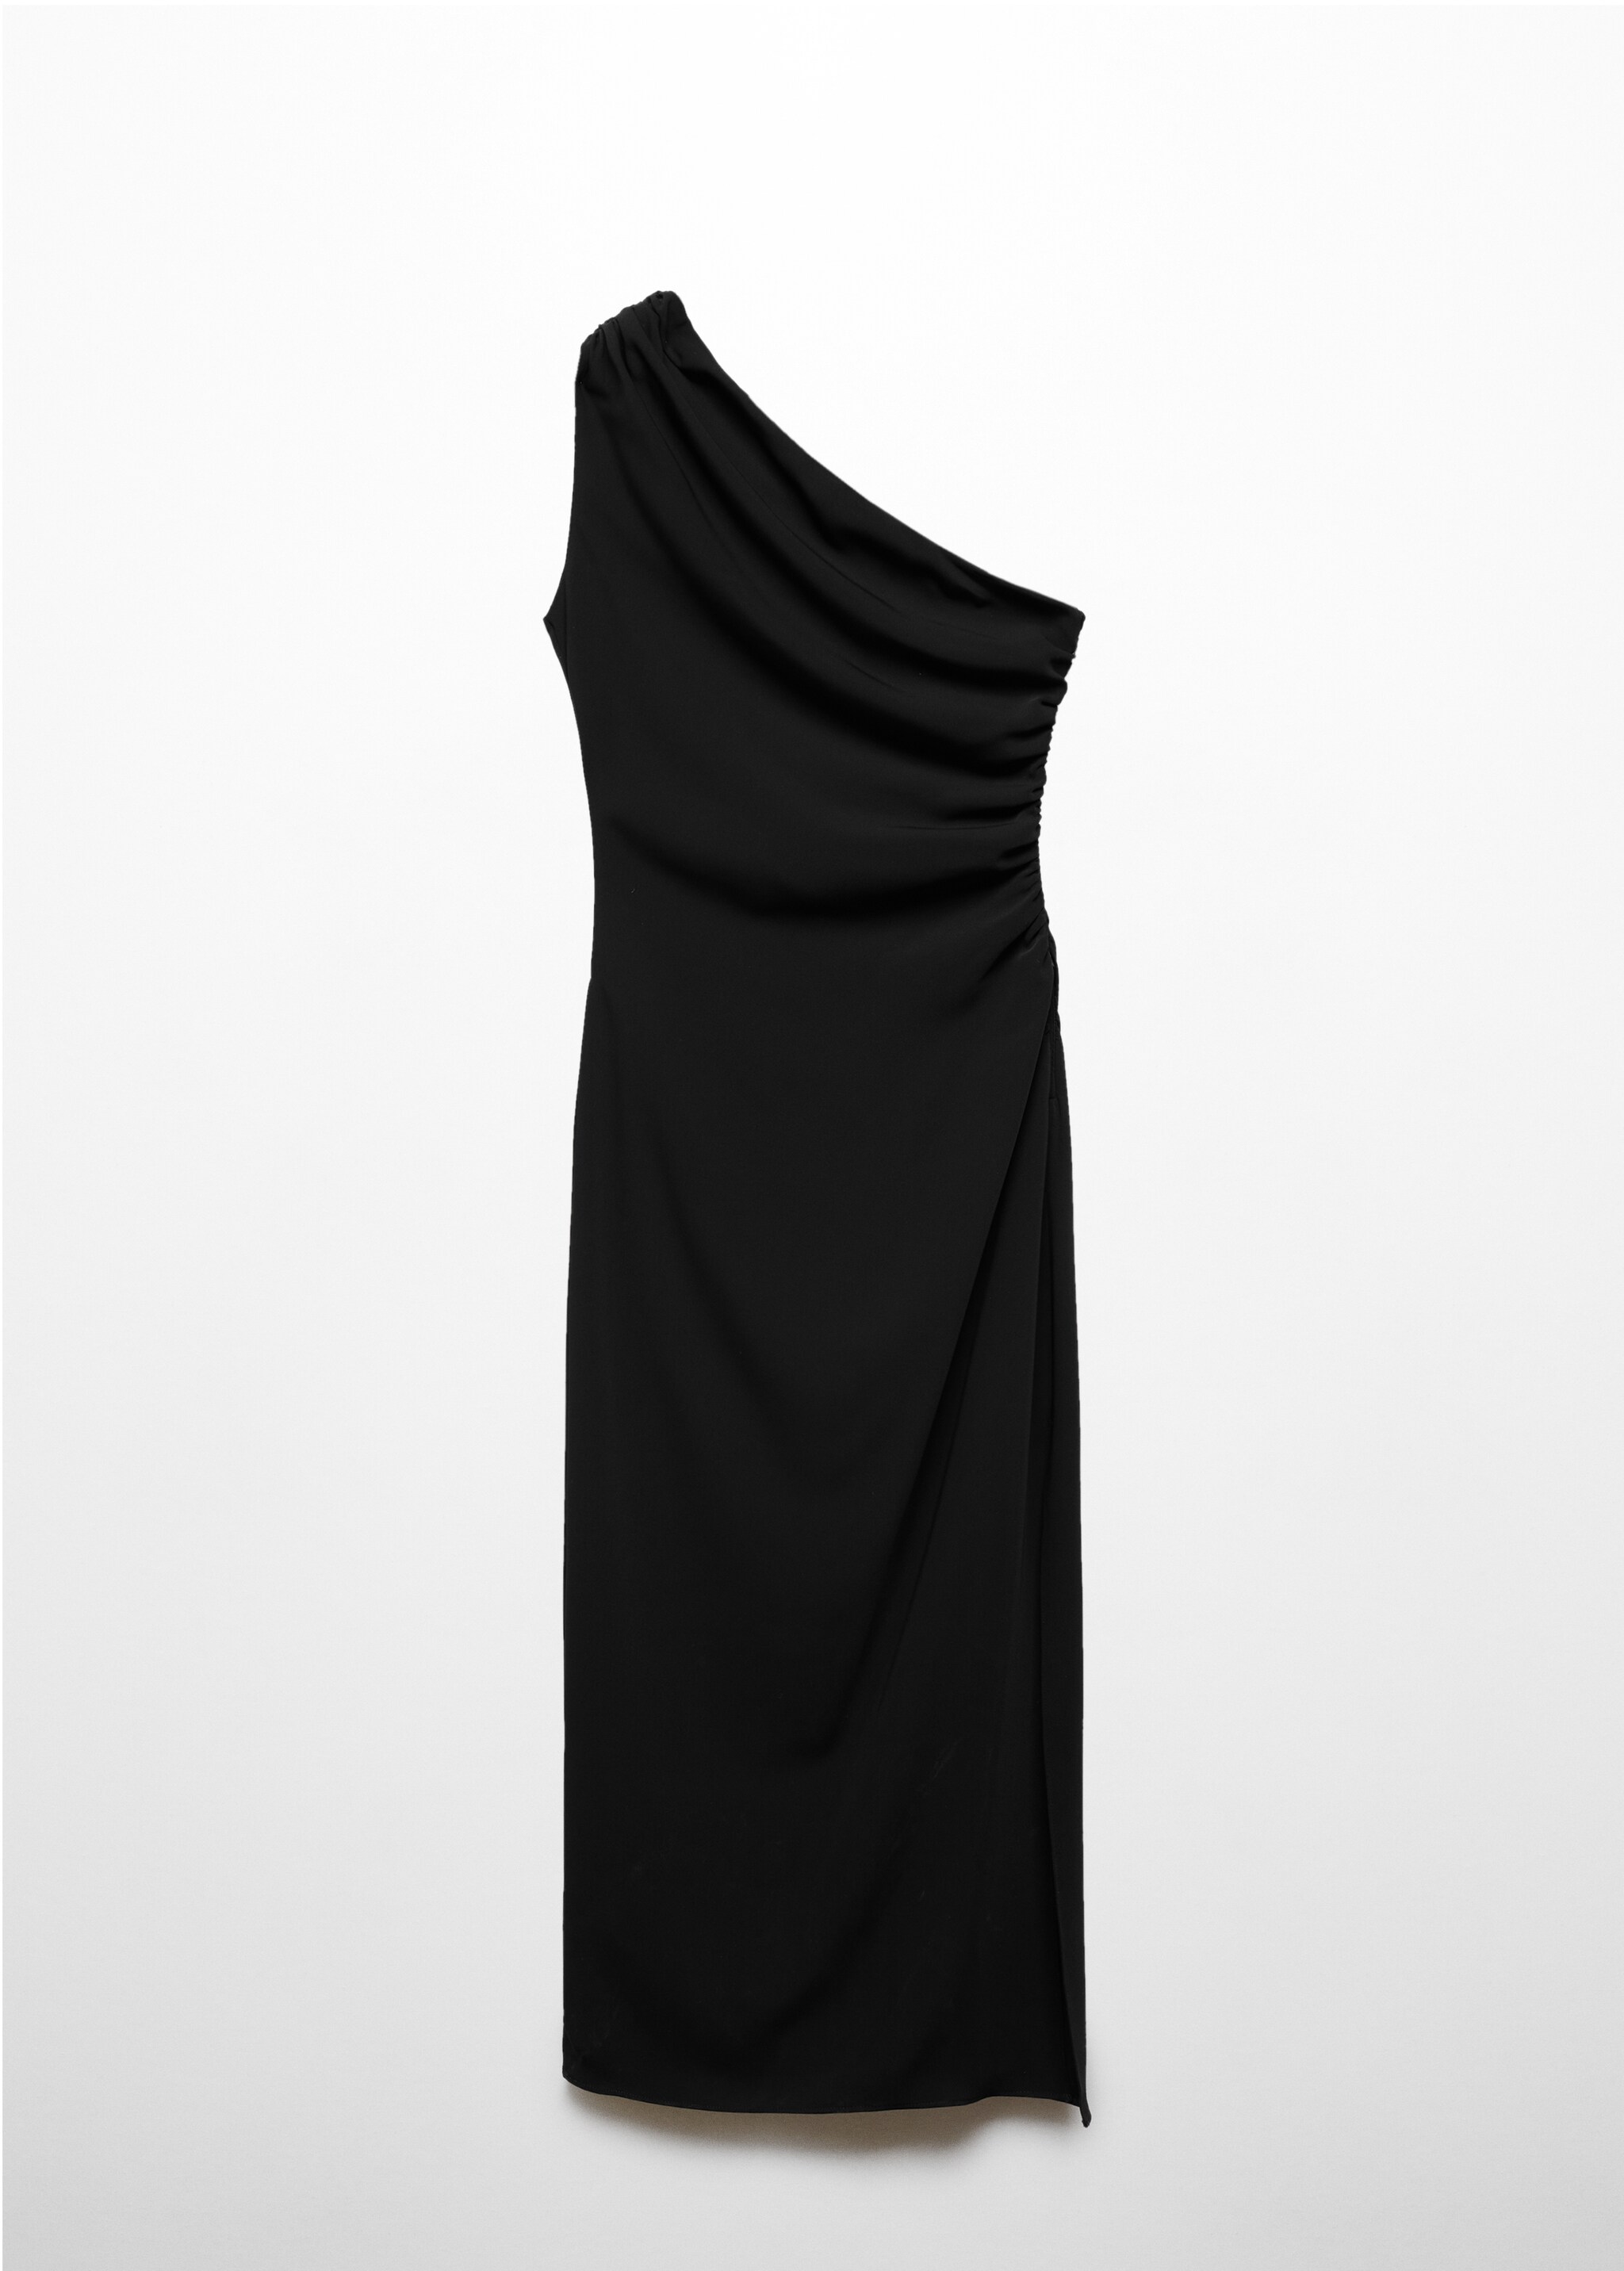 Асимметричное платье с боковым разрезом - Изделие без модели